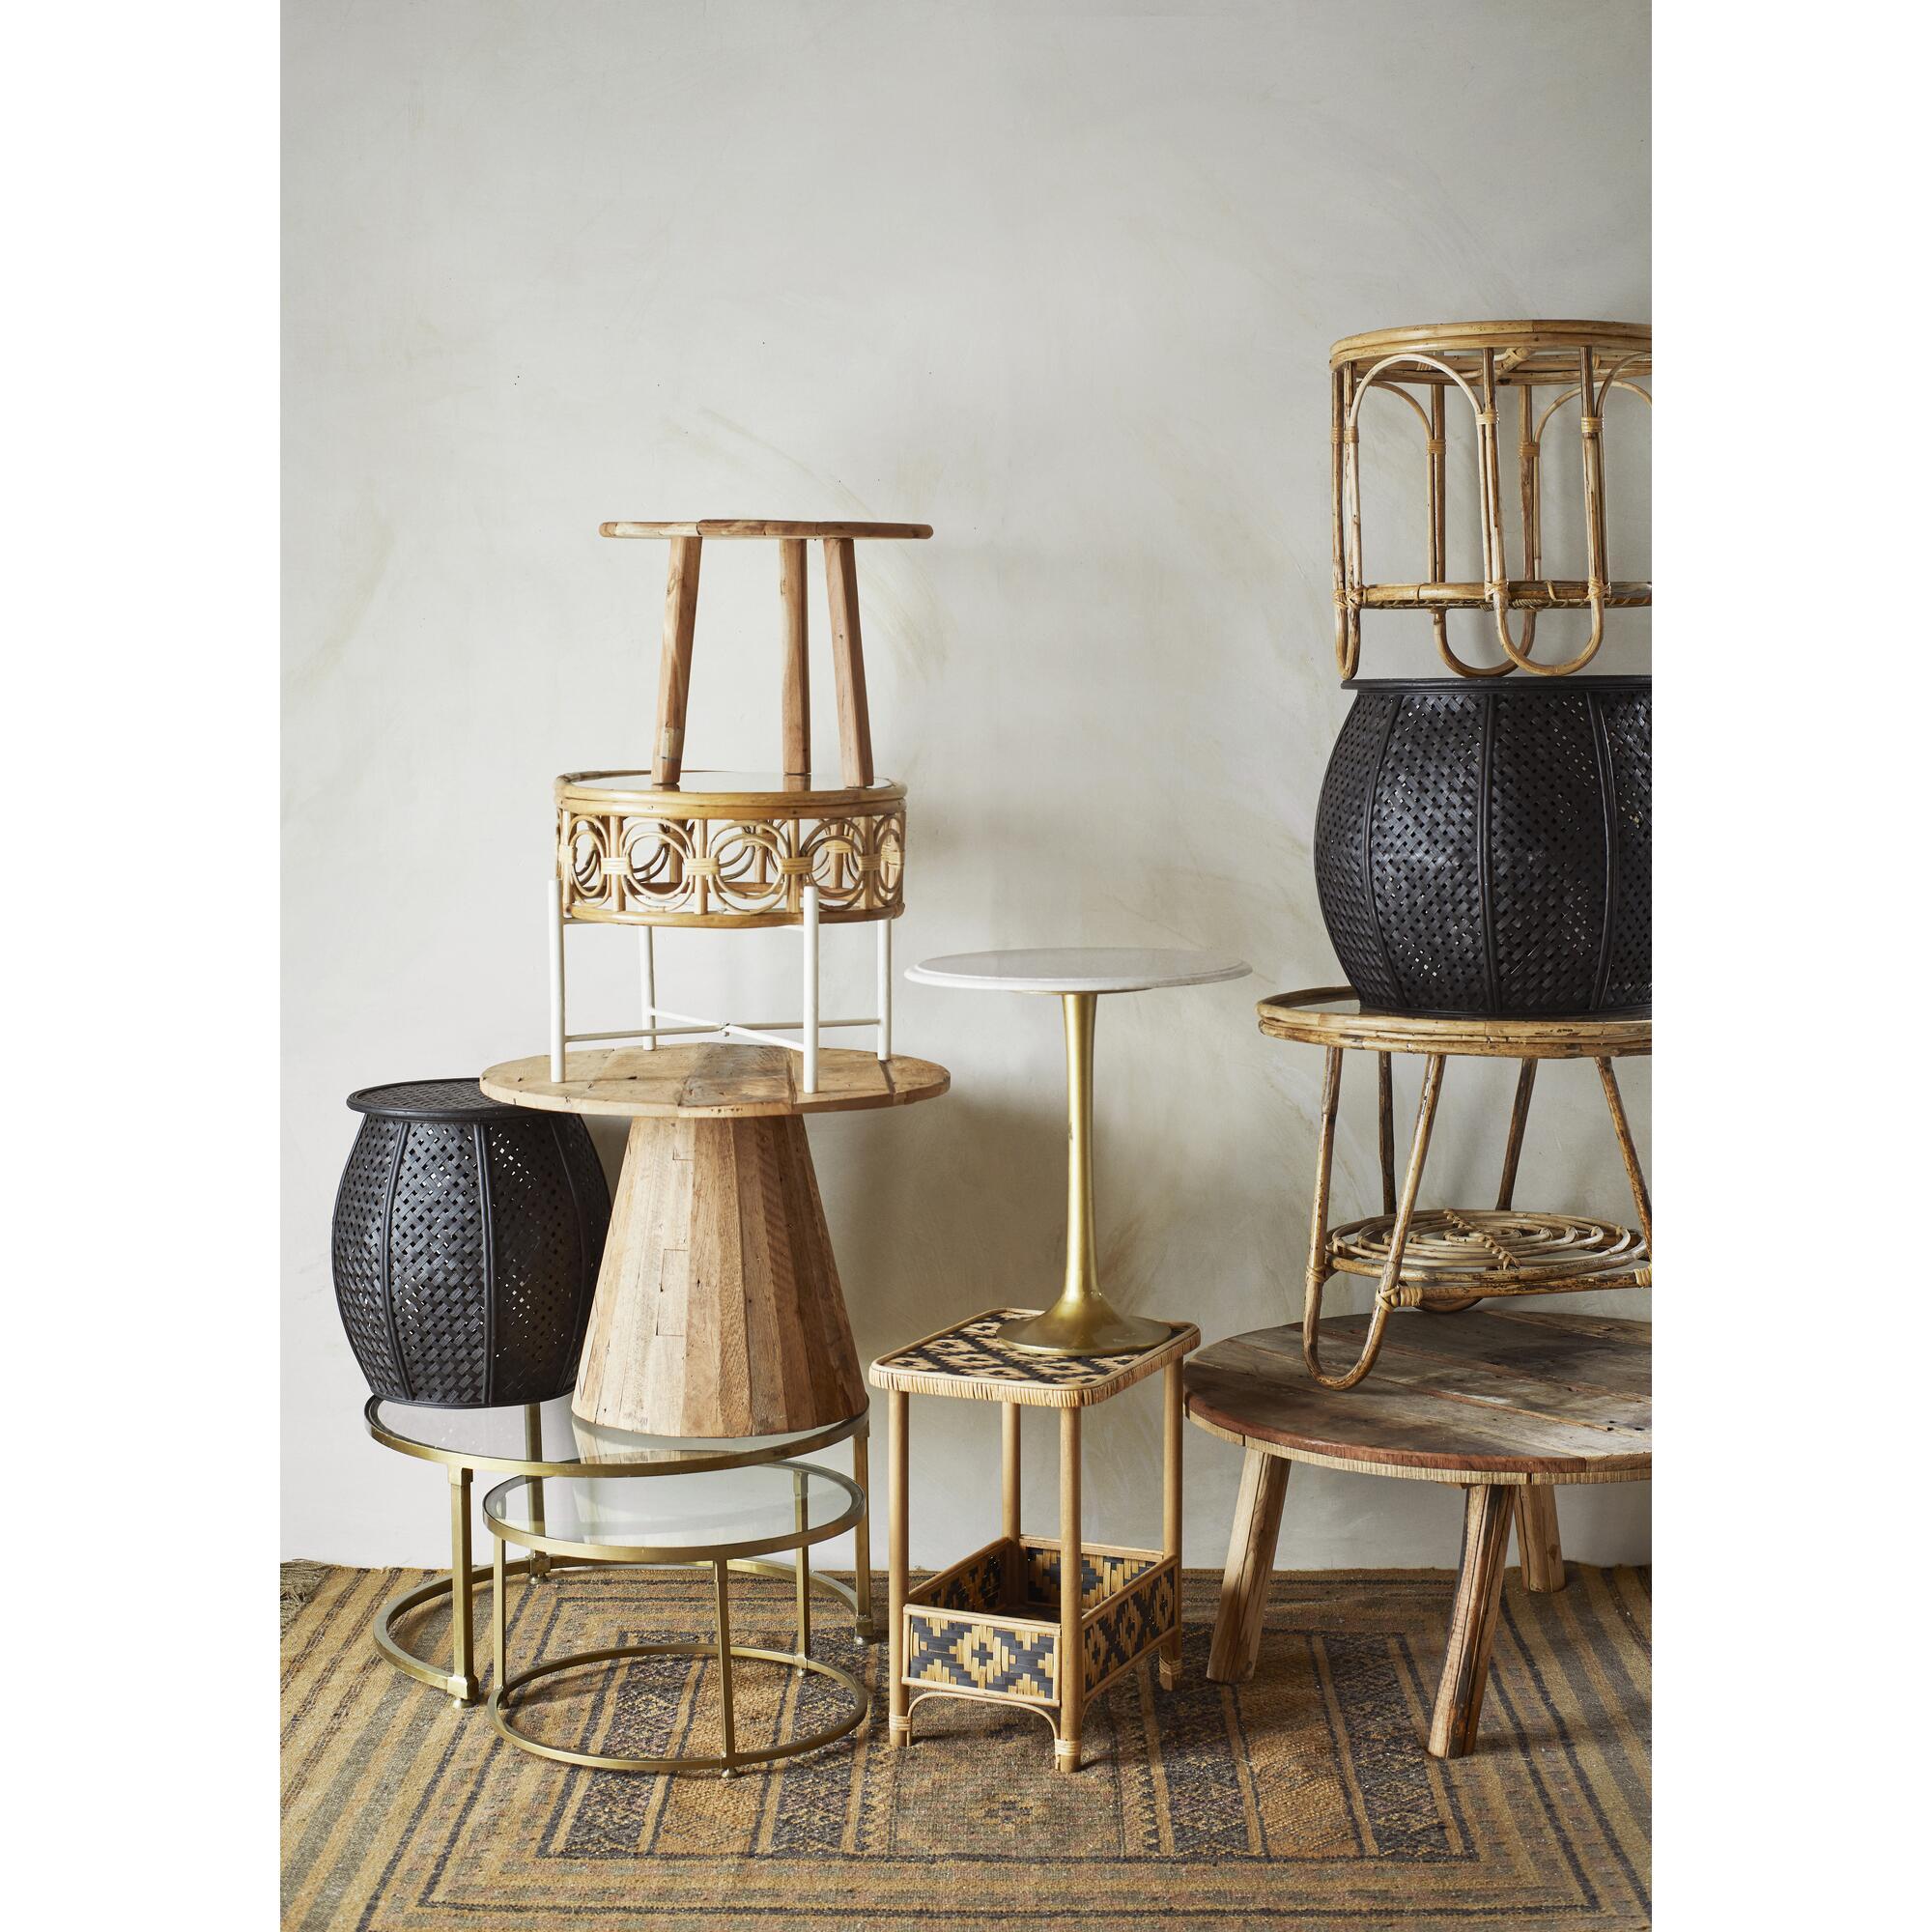  Sofabord i bambus - naturfarvet fra Madam Stoltz i Bambus, jern, glas (Varenr: 29947)